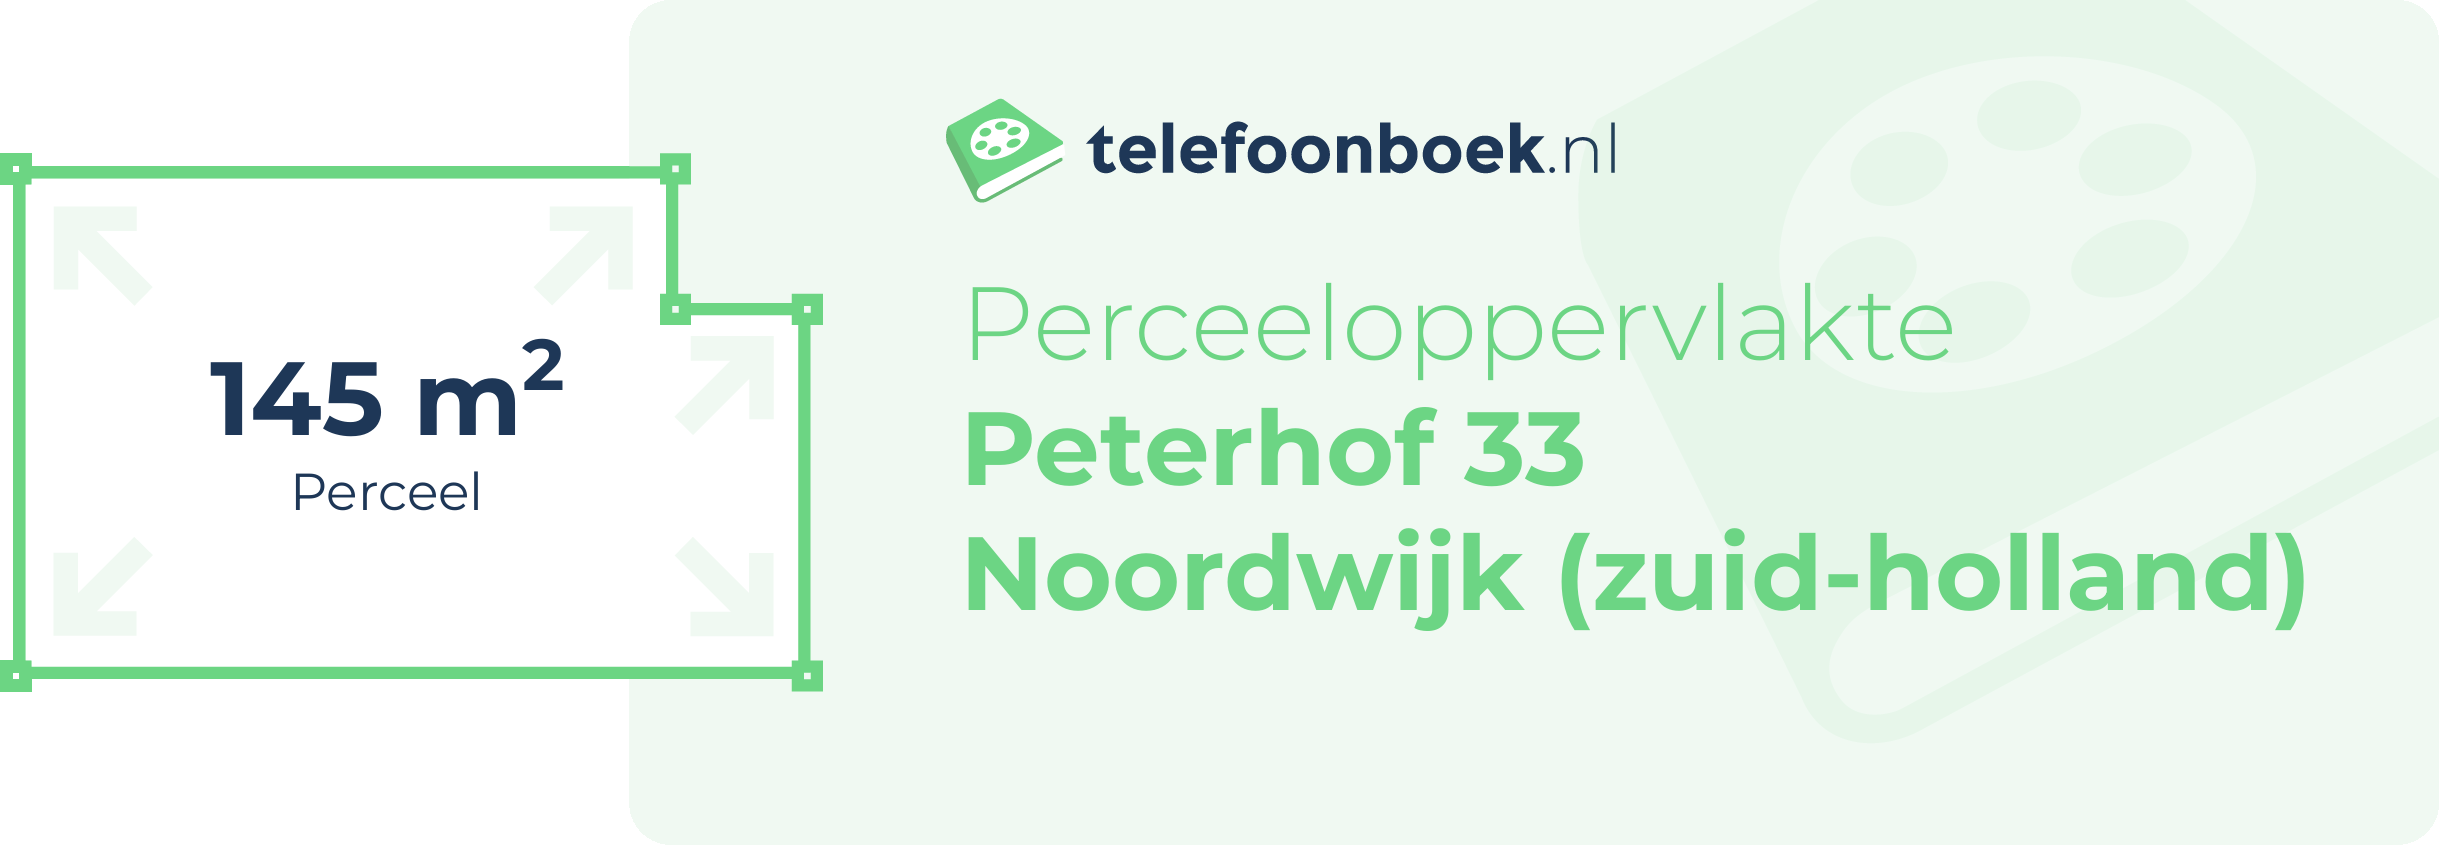 Perceeloppervlakte Peterhof 33 Noordwijk (Zuid-Holland)